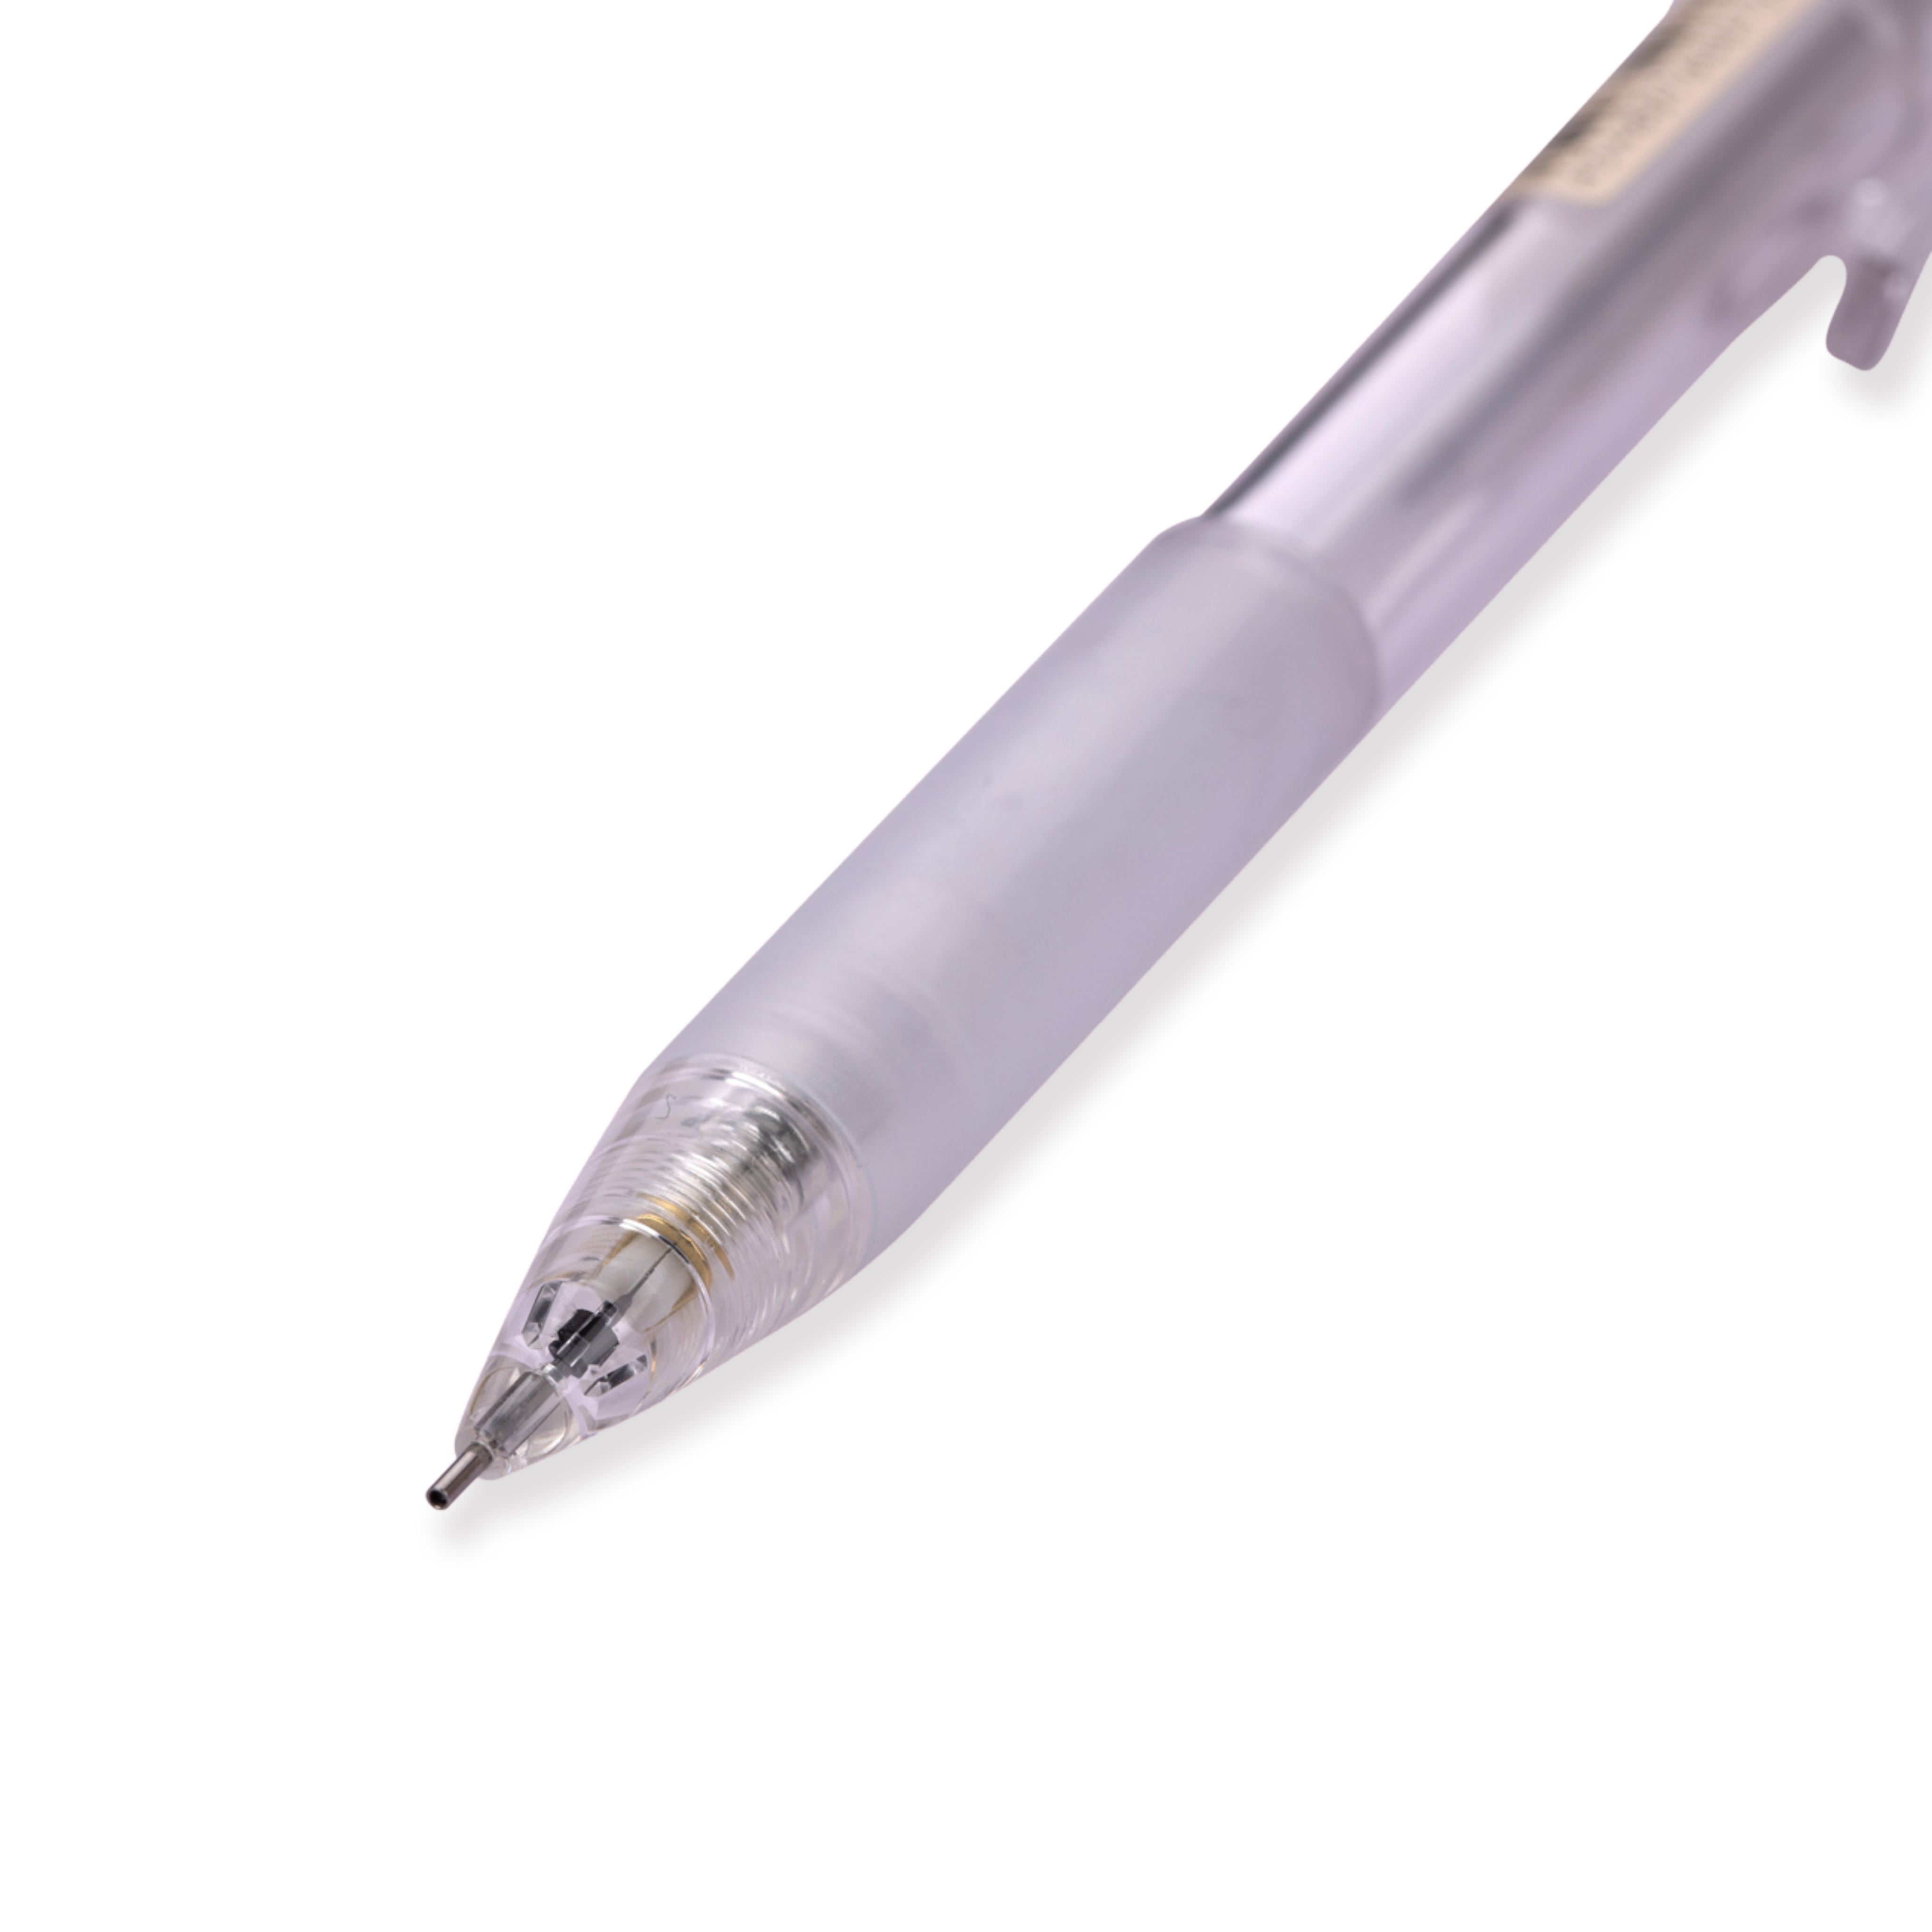 Muji spitzer Bleistift aus Polycarbonat mit Gummigriff, 0,5 mm